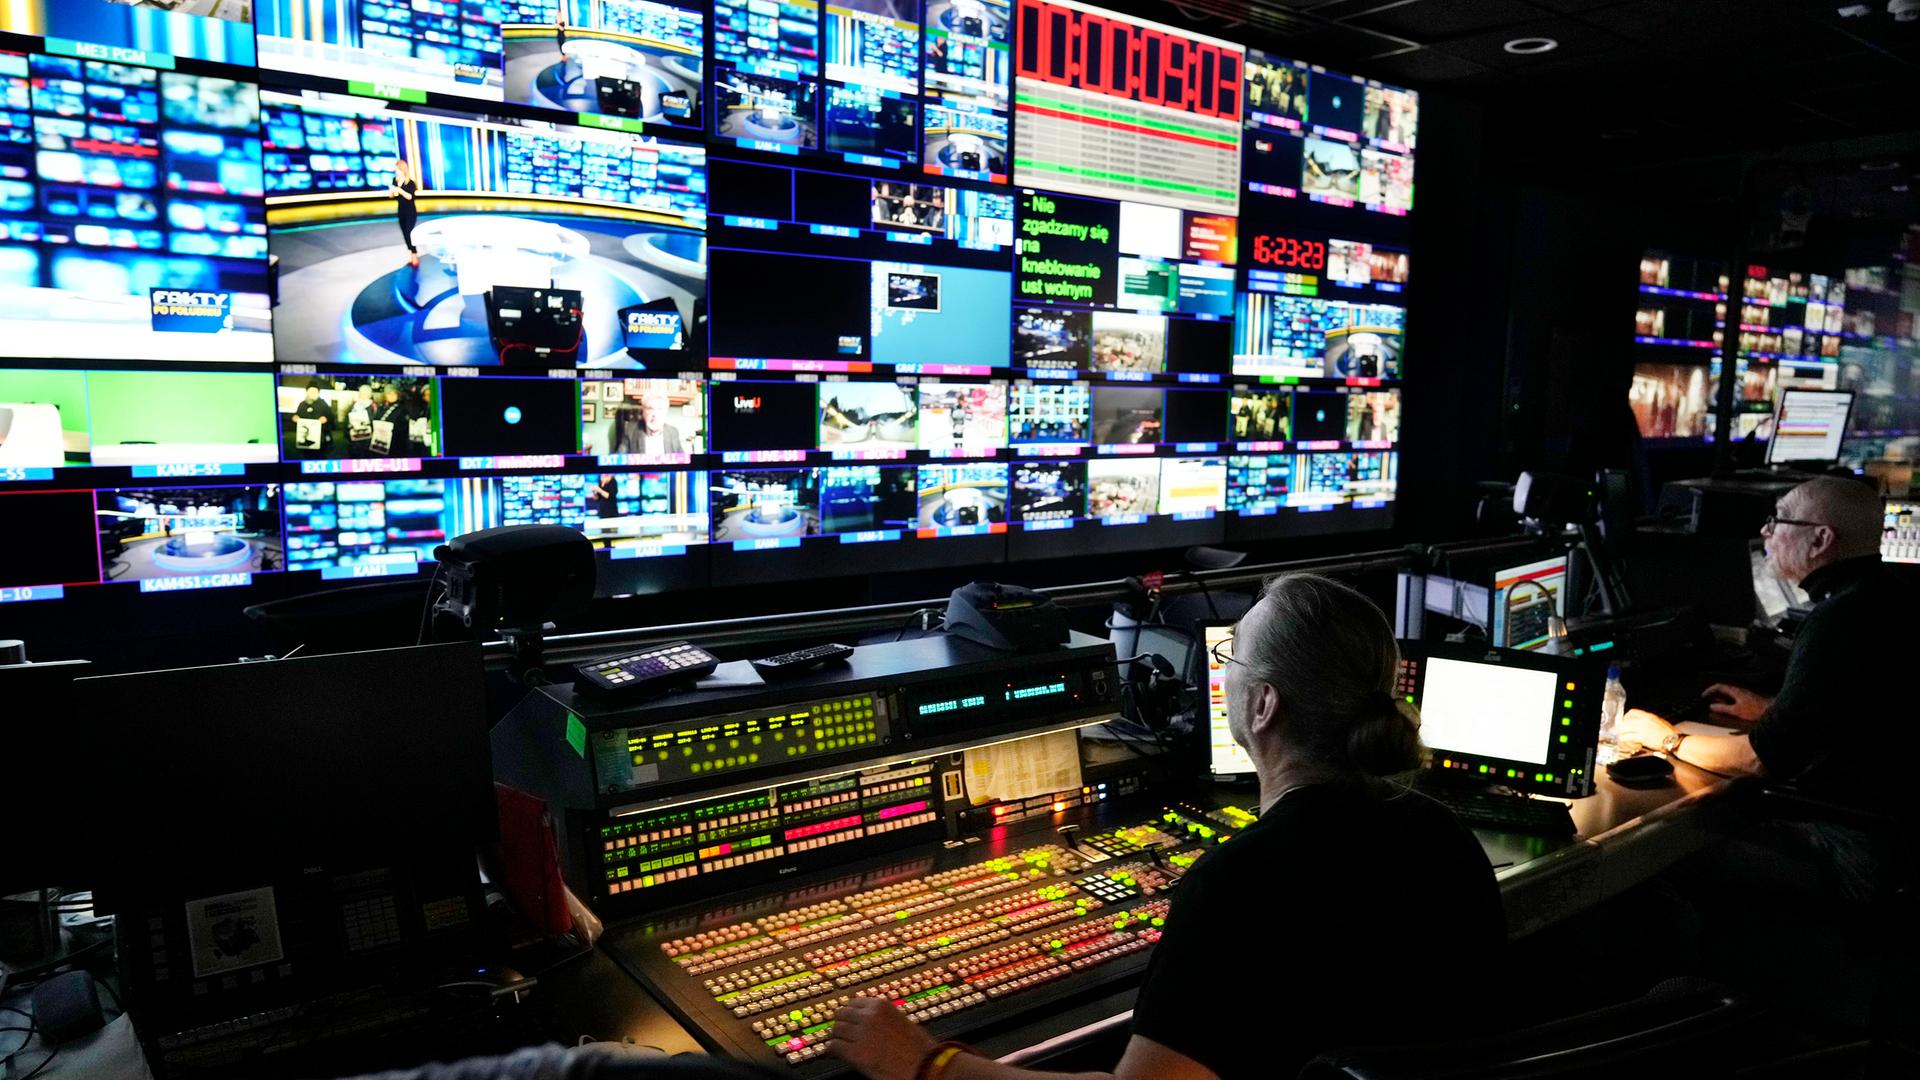 In der Regie eines Fernsehsenders sind zahlreiche Monitore zu sehen.